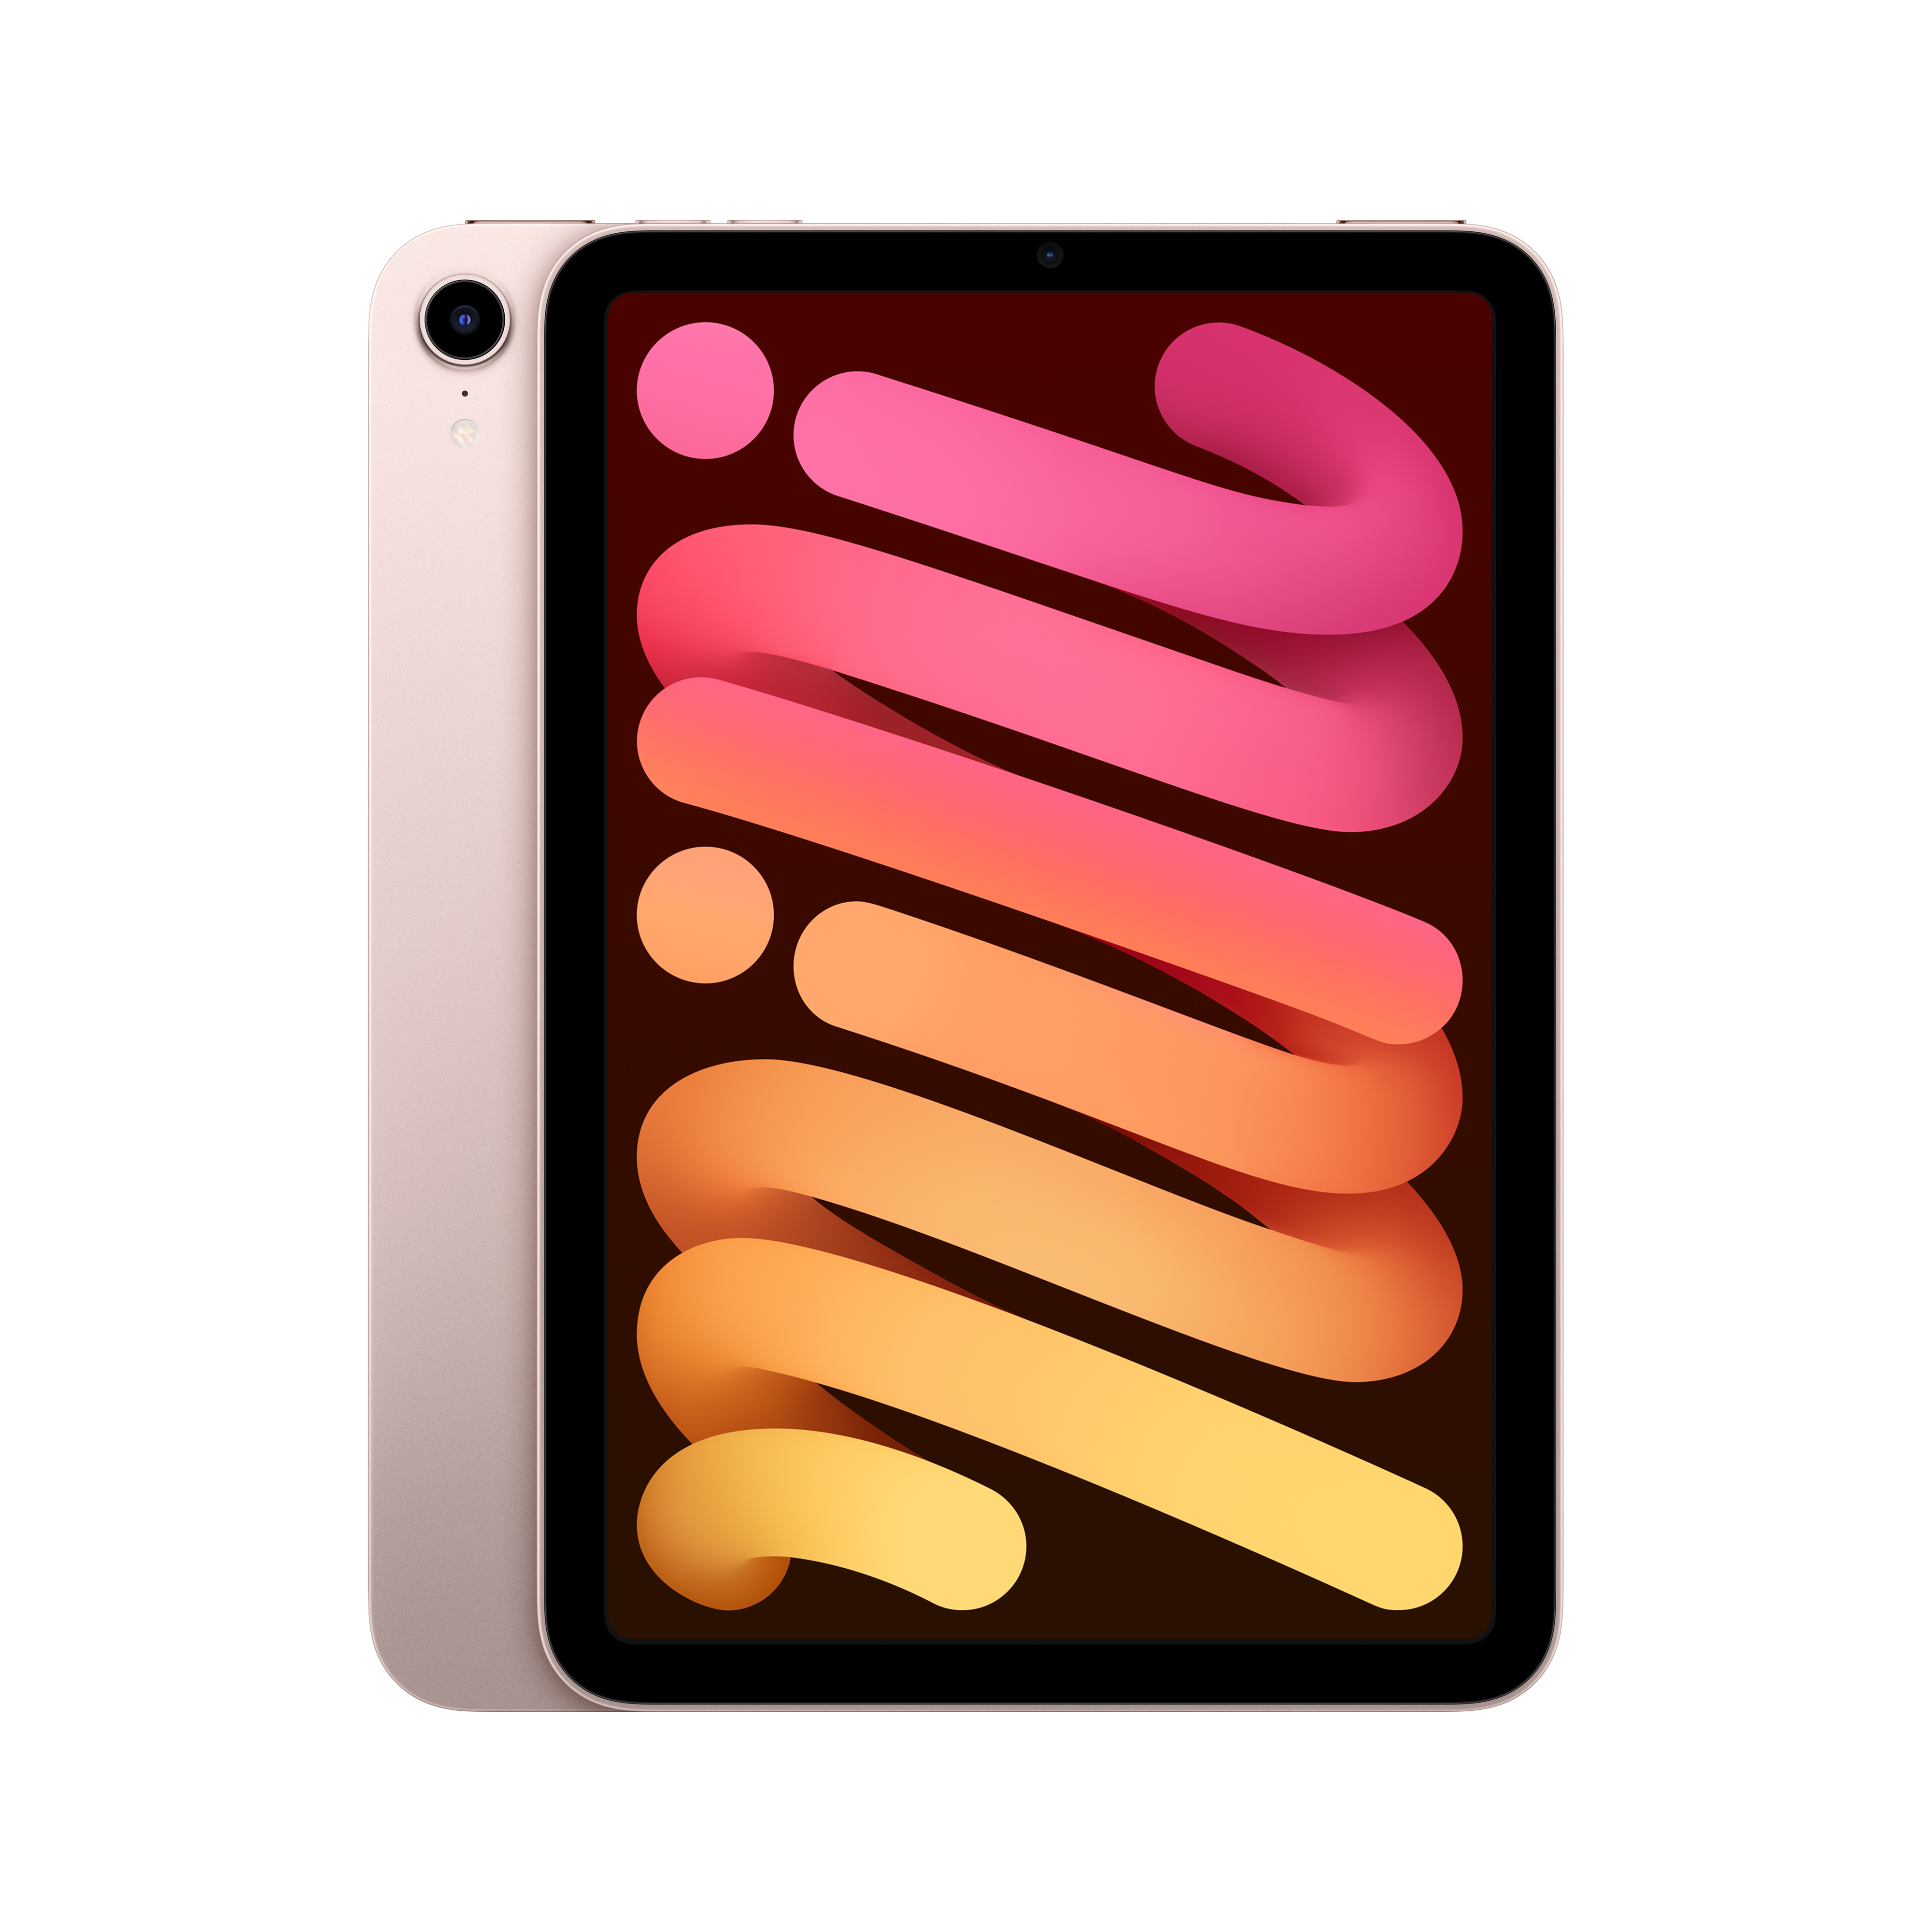 iPad_mini_Q421_Wi-Fi_Pink_PDP_Image_Position-1b__ru-RU